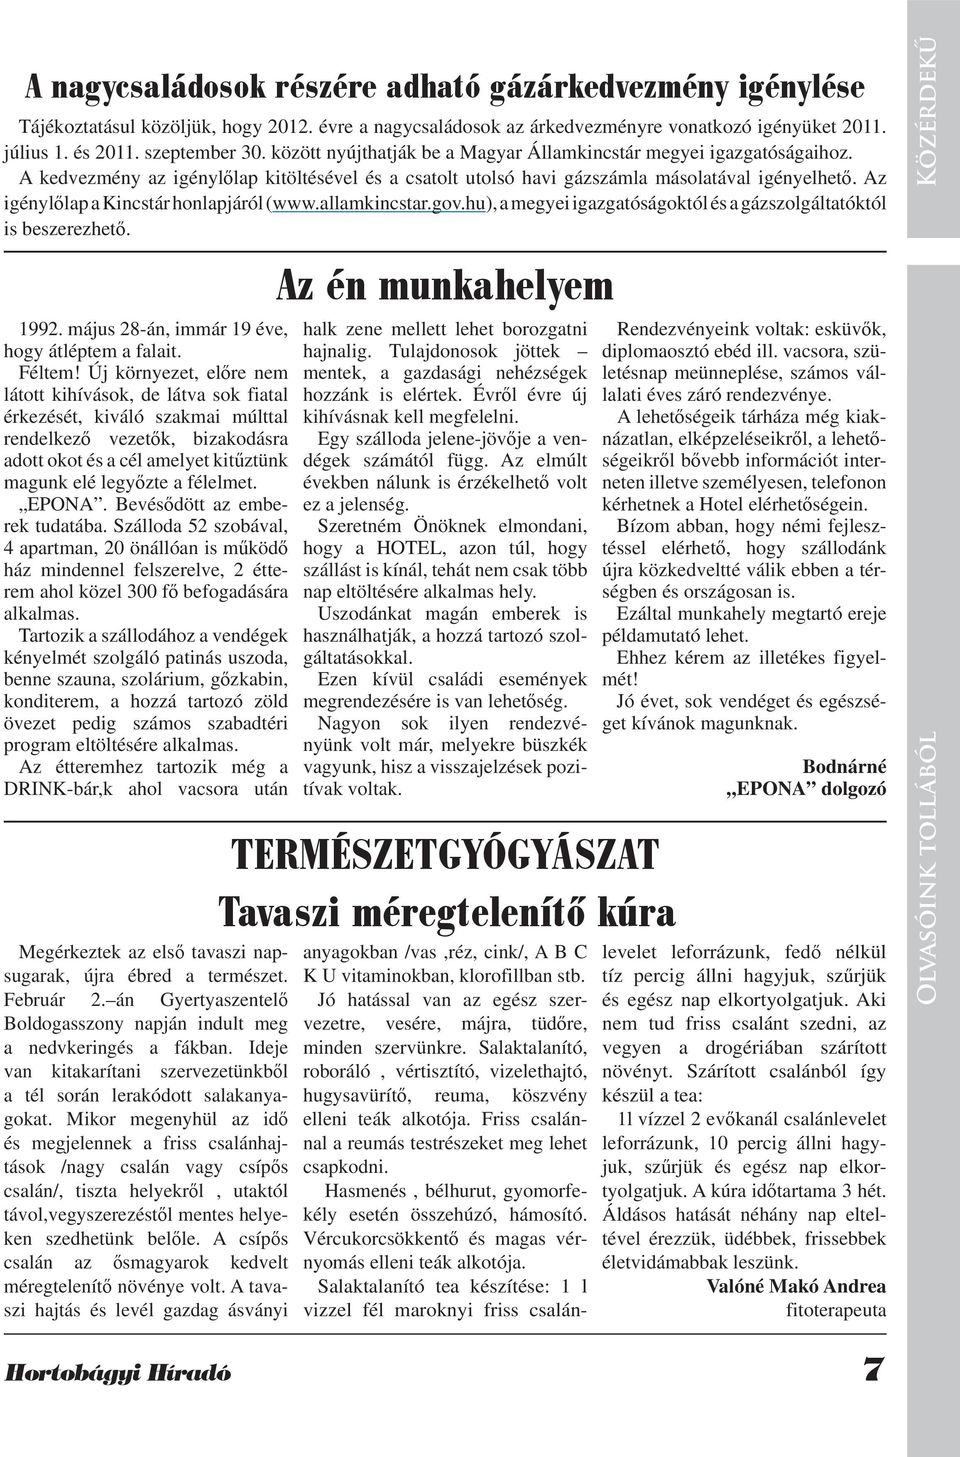 Az igénylőlap a Kincstár honlapjáról (www.allamkincstar.gov.hu), a megyei igazgatóságoktól és a gázszolgáltatóktól is beszerezhető. 1992. május 28-án, immár 19 éve, hogy átléptem a falait. Féltem!